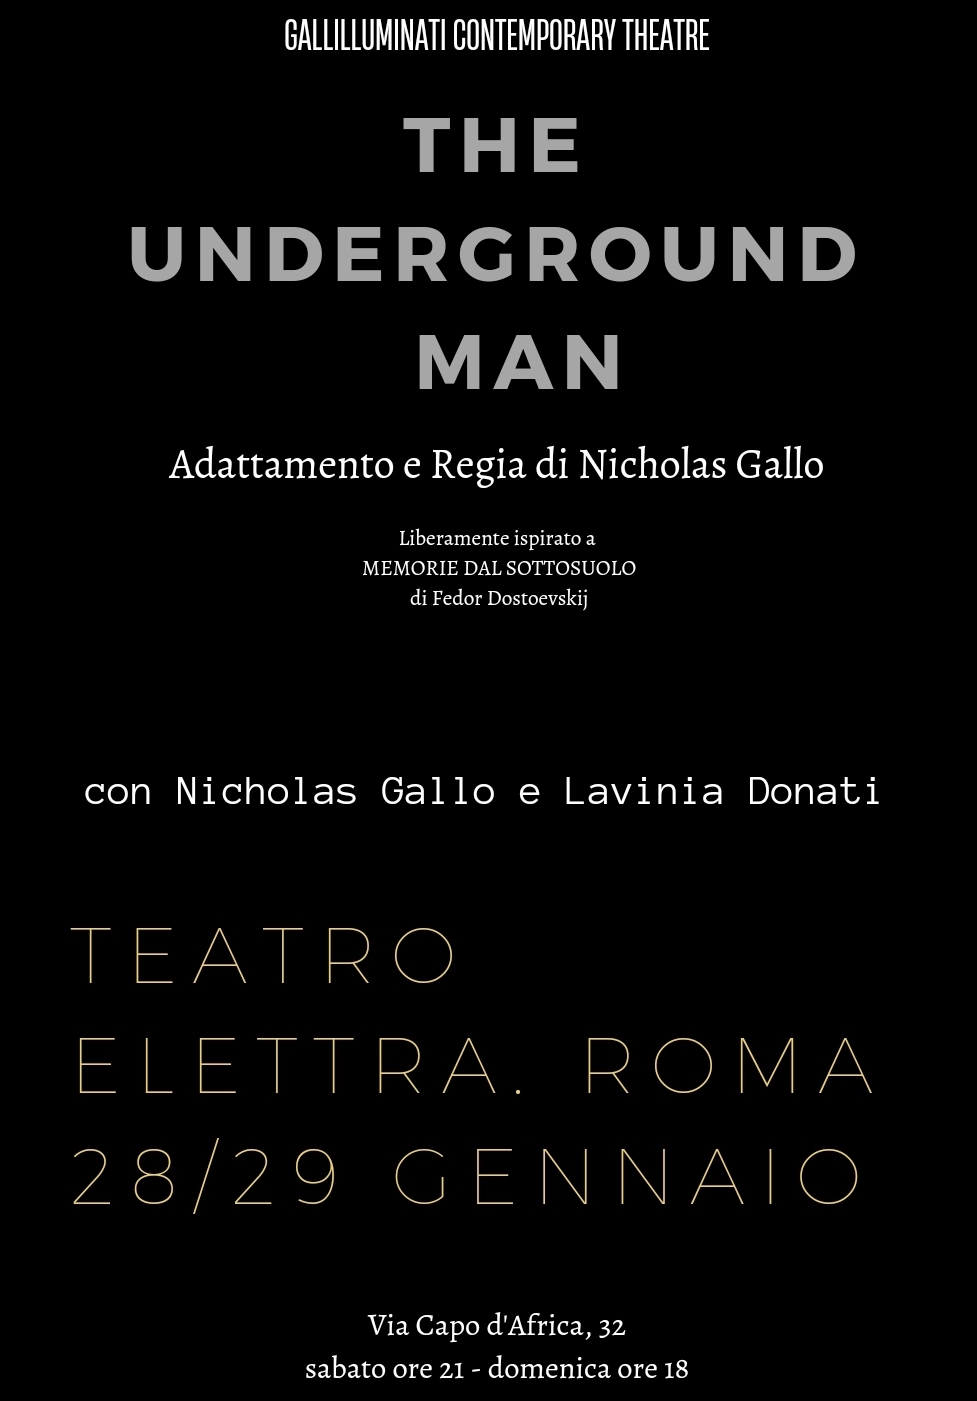 Foto 1 - THE UNDERGROUND MAN in scena Sabato 28 e domenica 29 gennaio a Roma al teatro Elettra 